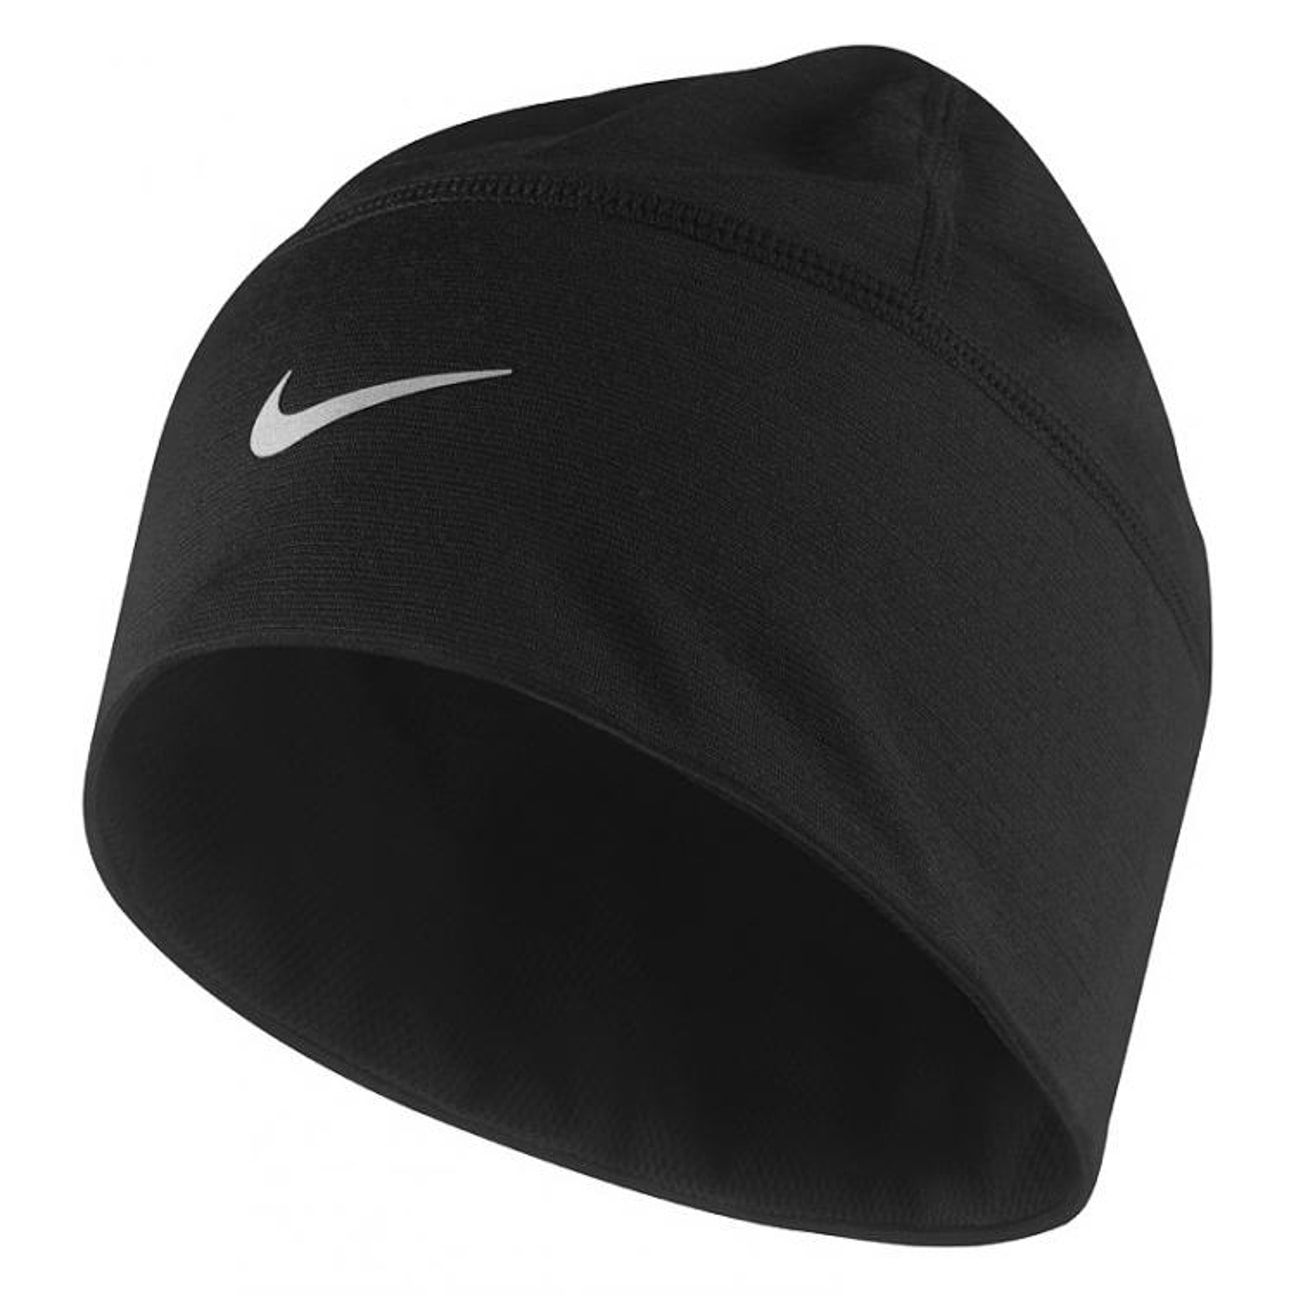 Wool Skull Cap by Nike, EUR 19,95 --> Hats, caps & beanies shop online ...